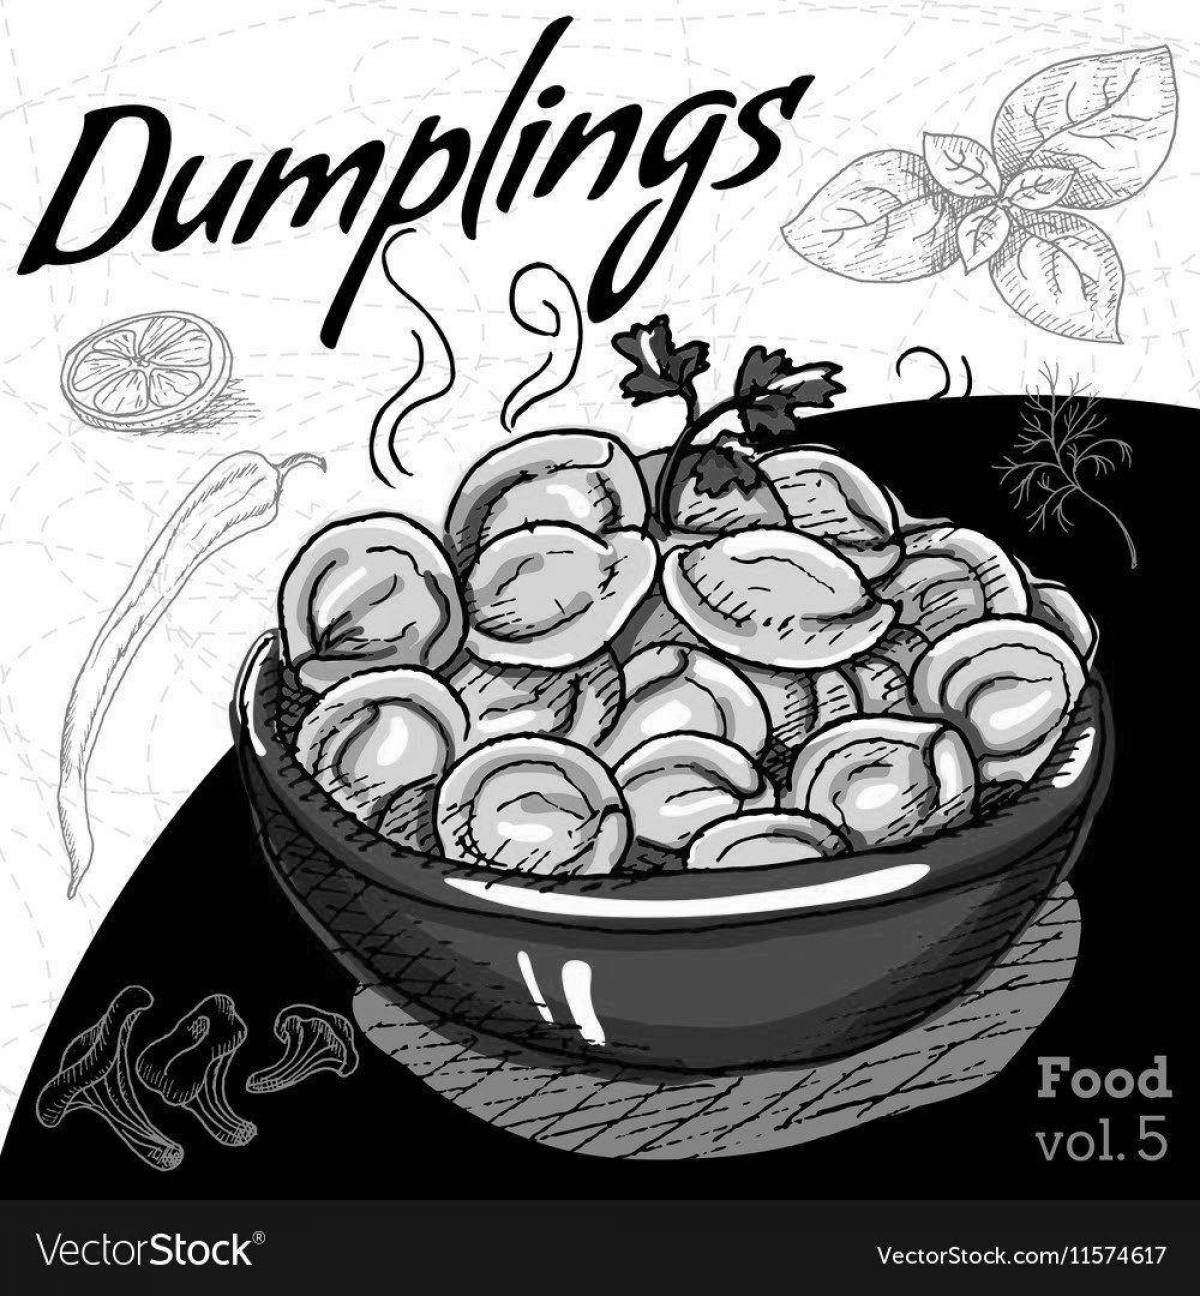 Heavenly dumplings in a bowl